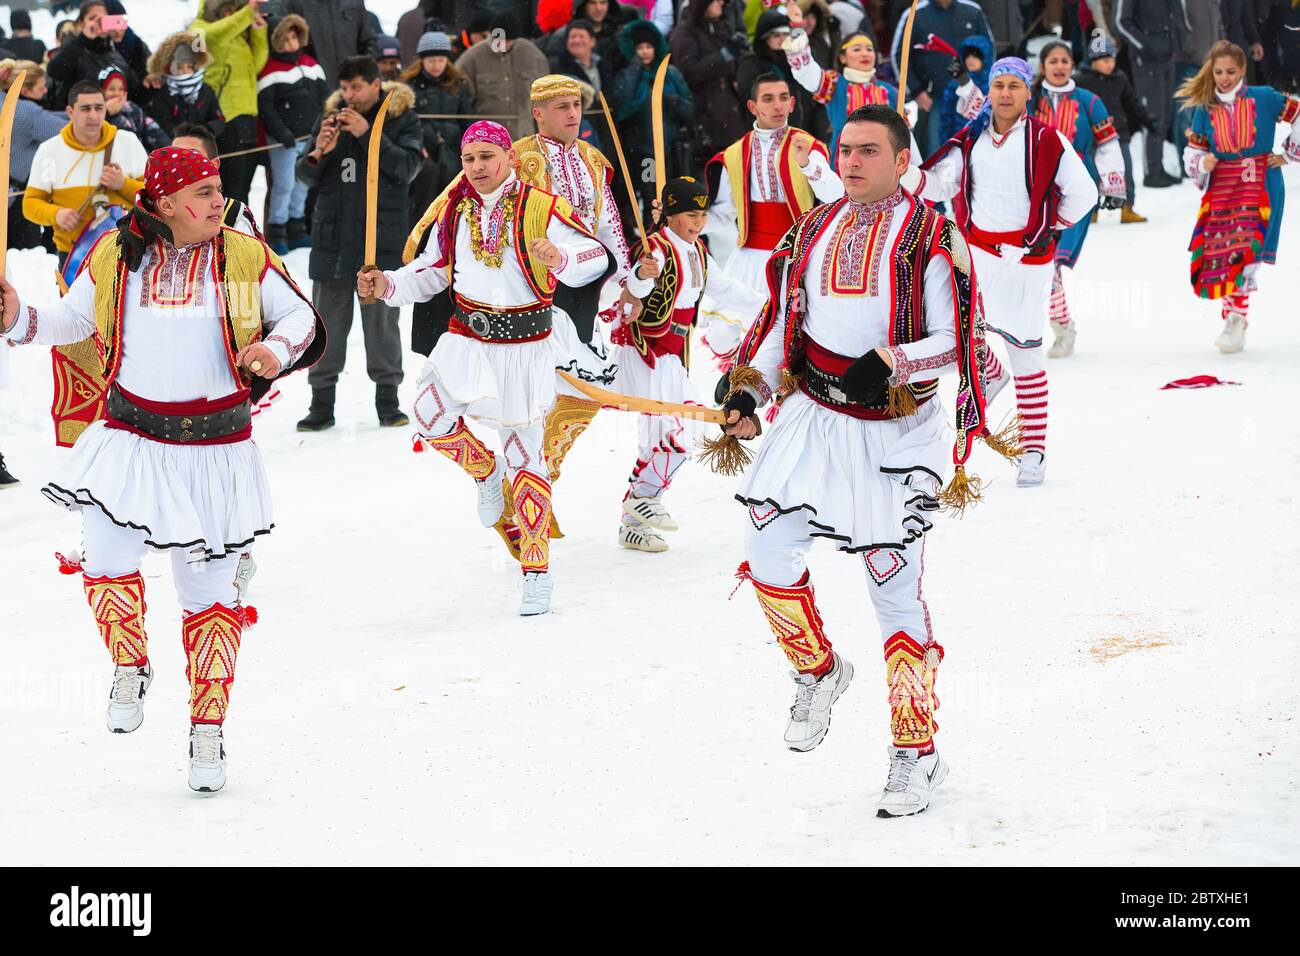 Razlog, Bulgaria - 14 gennaio 2017: La gente che balla nel festival tradizionale dei balcani Foto Stock